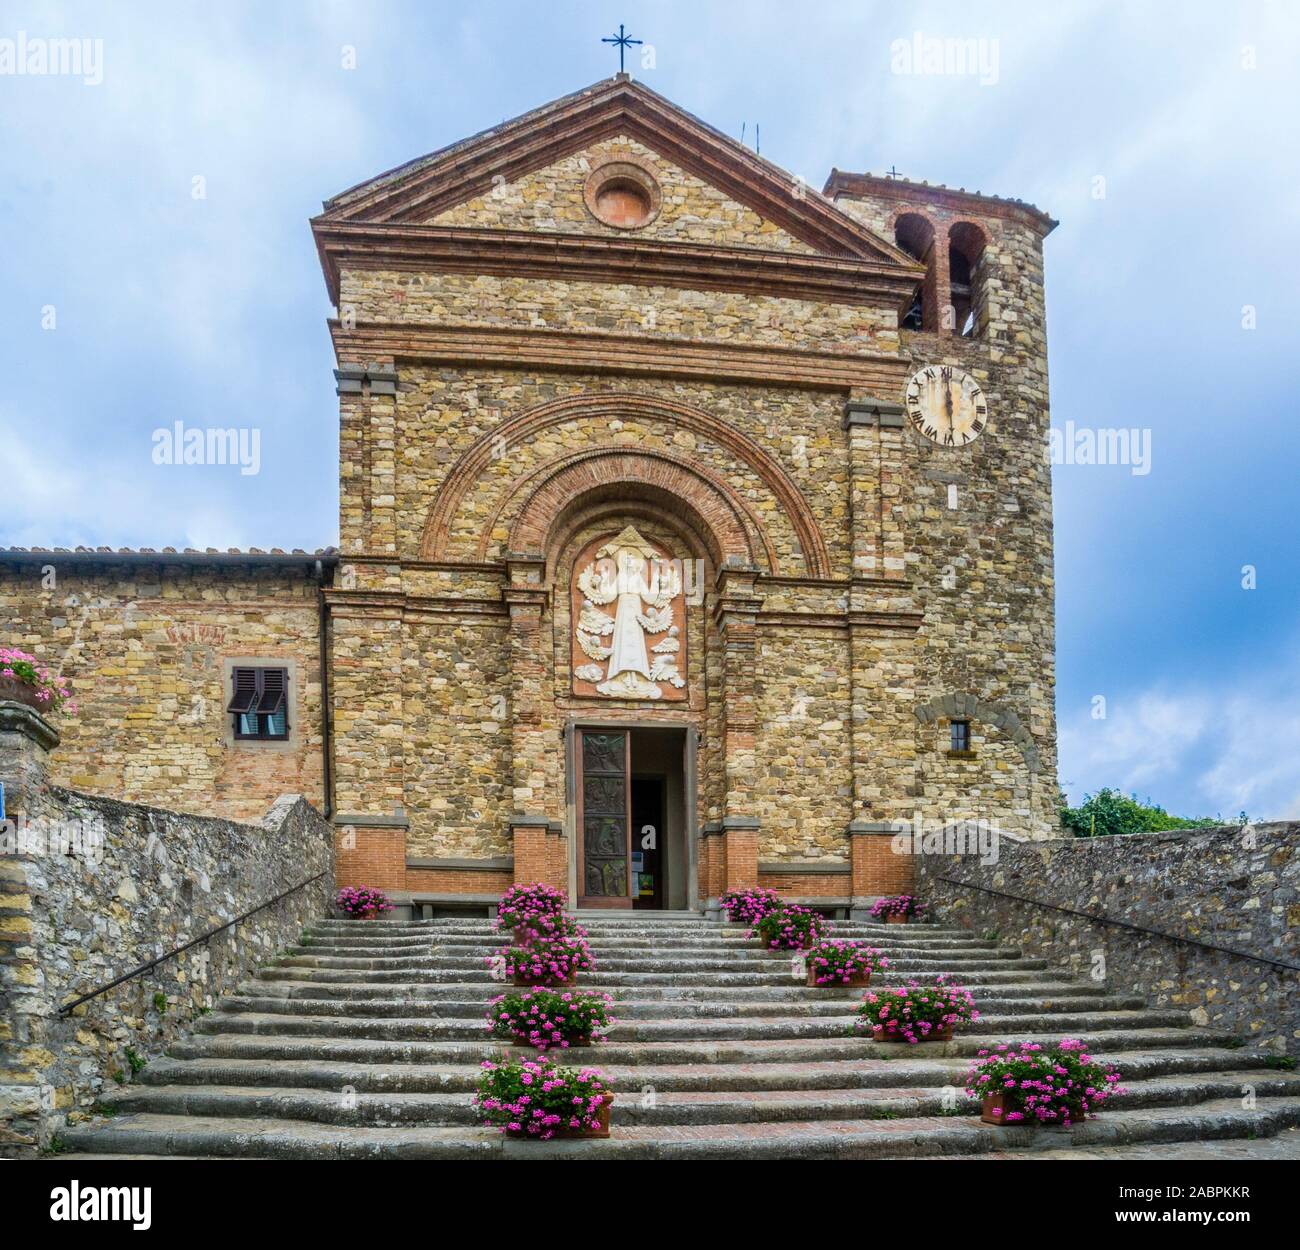 Chiesa di Santa Maria Assunta, Panzano in Chianti, nella regione rurale del Chianti in provincia di Siena, Toscana, Italia Foto Stock